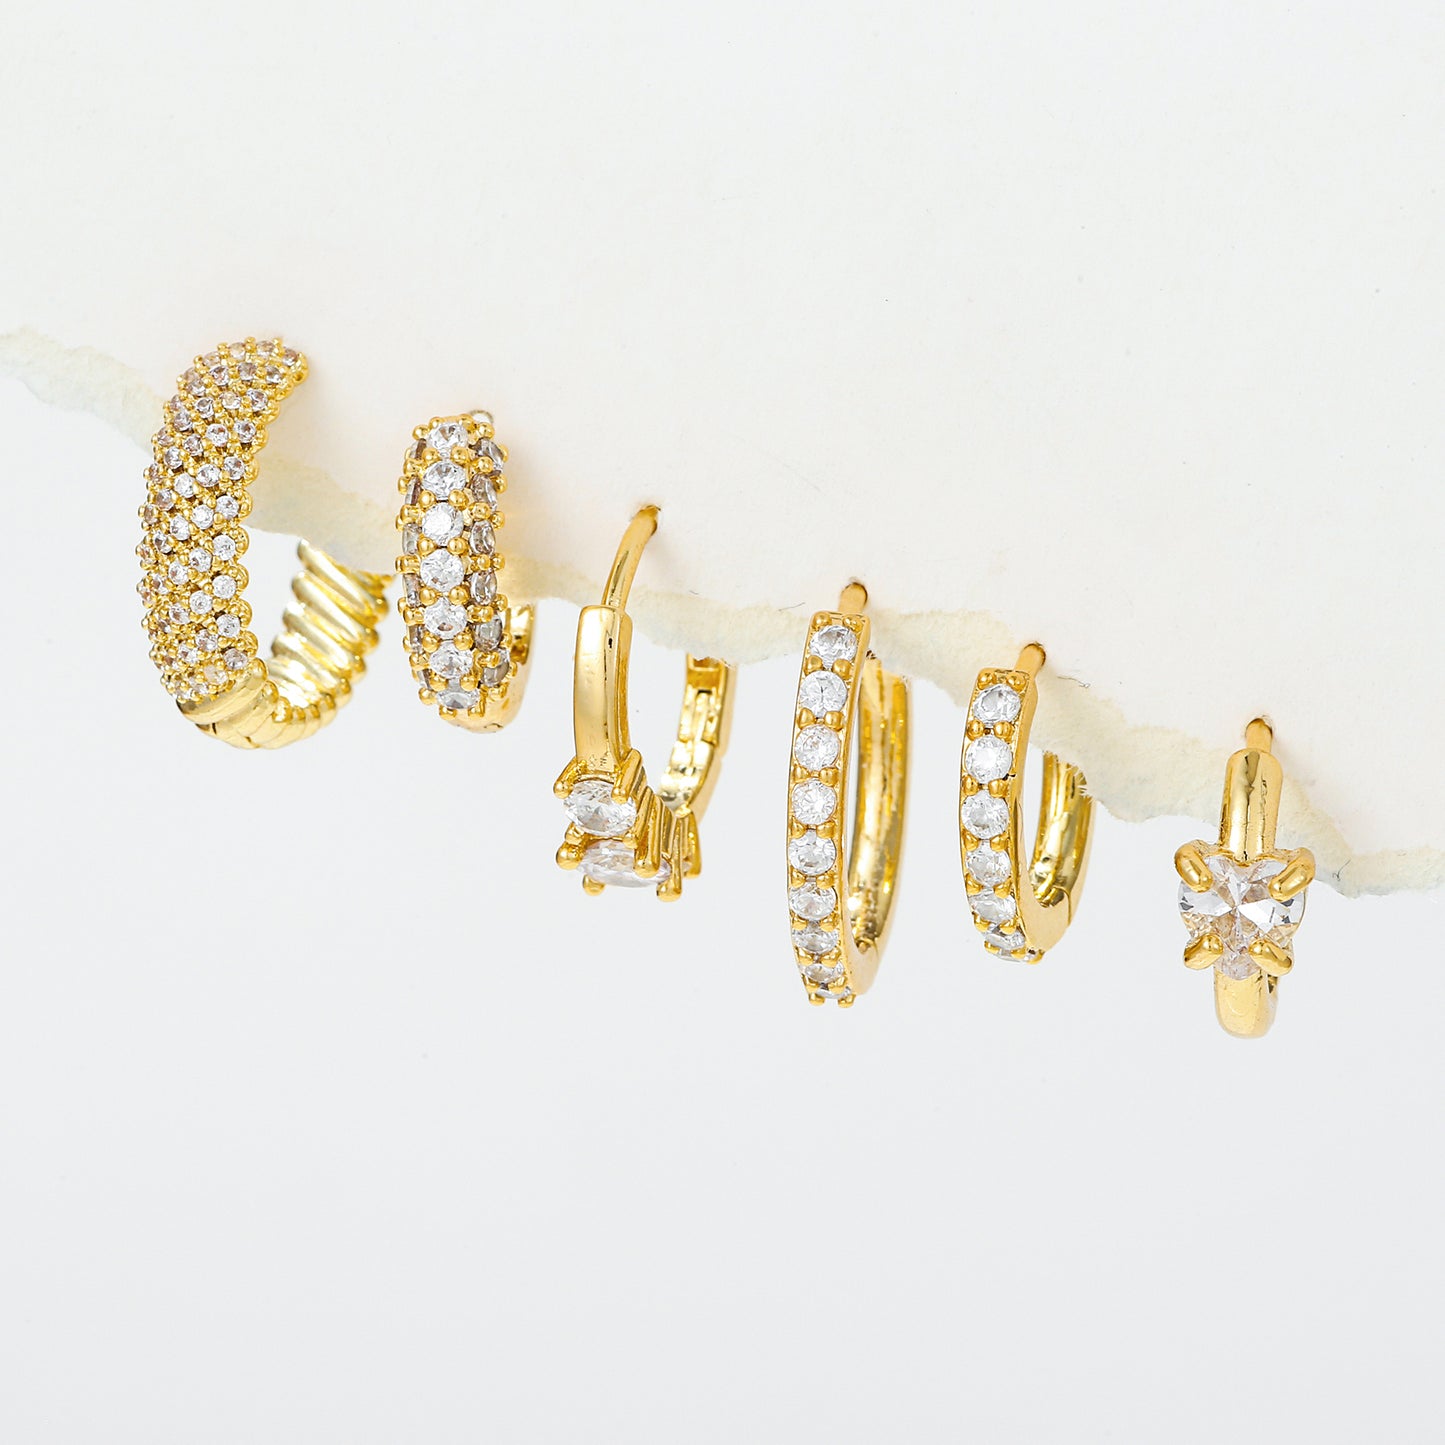 1 Set Shiny Brass Asymmetrical Hoops Earrings with Zircon